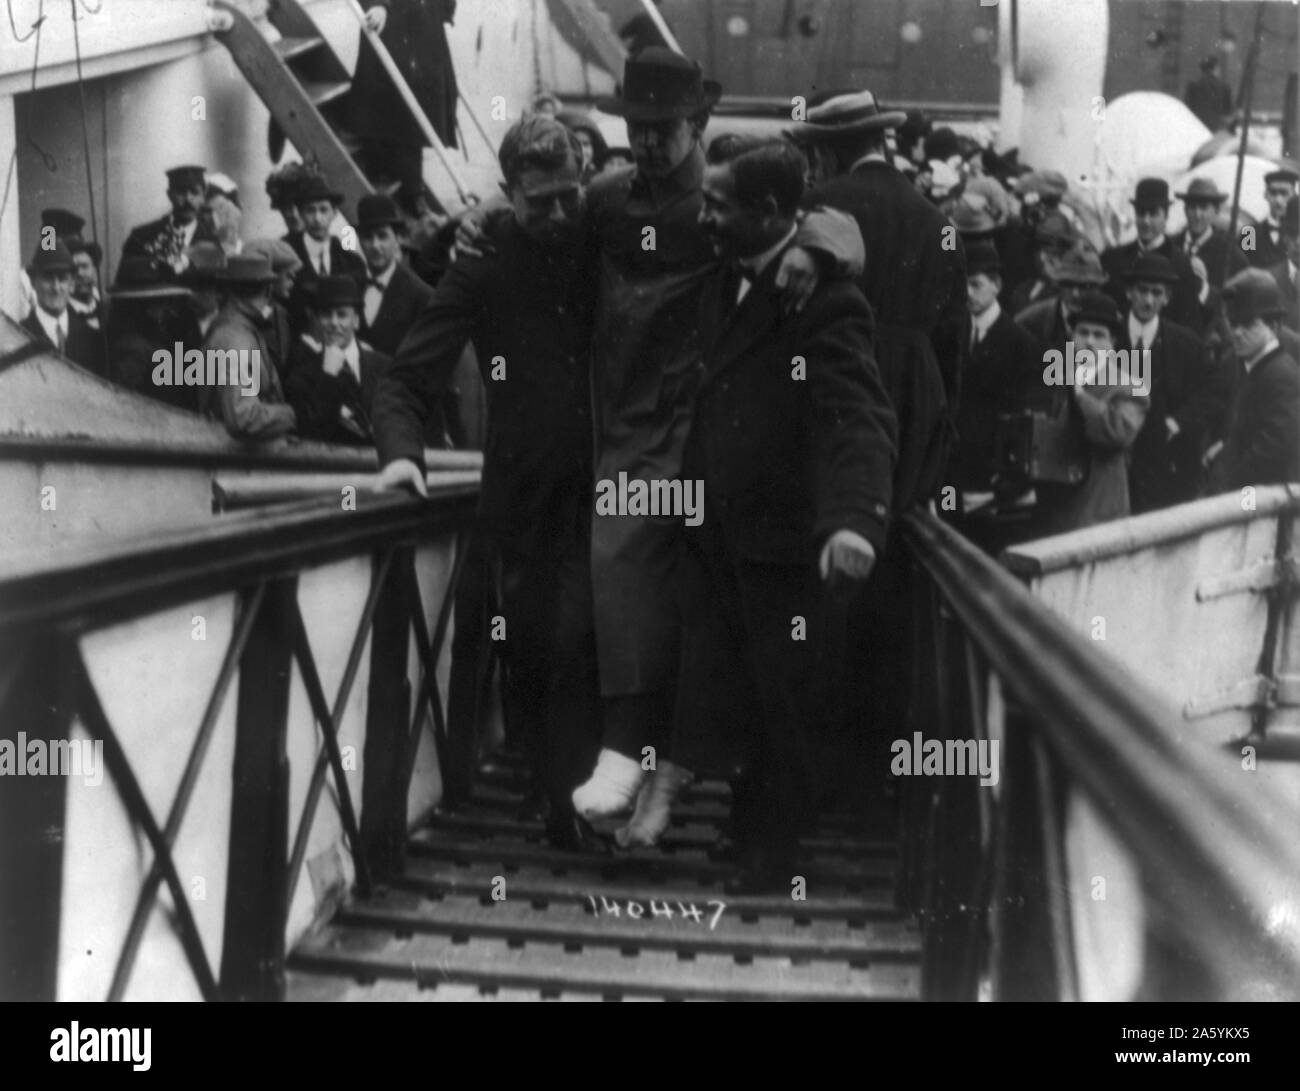 Verlust der Olympic White Star Line-Klasse Schiff RMS Titanic mit einem Eisberg am 12. April 1912 ihre Jungfernfahrt angeschlagen. Überlebende Funker Harold Bride, Füße bandagiert, durchgeführt, Gangway, New York. Disaster Stockfoto